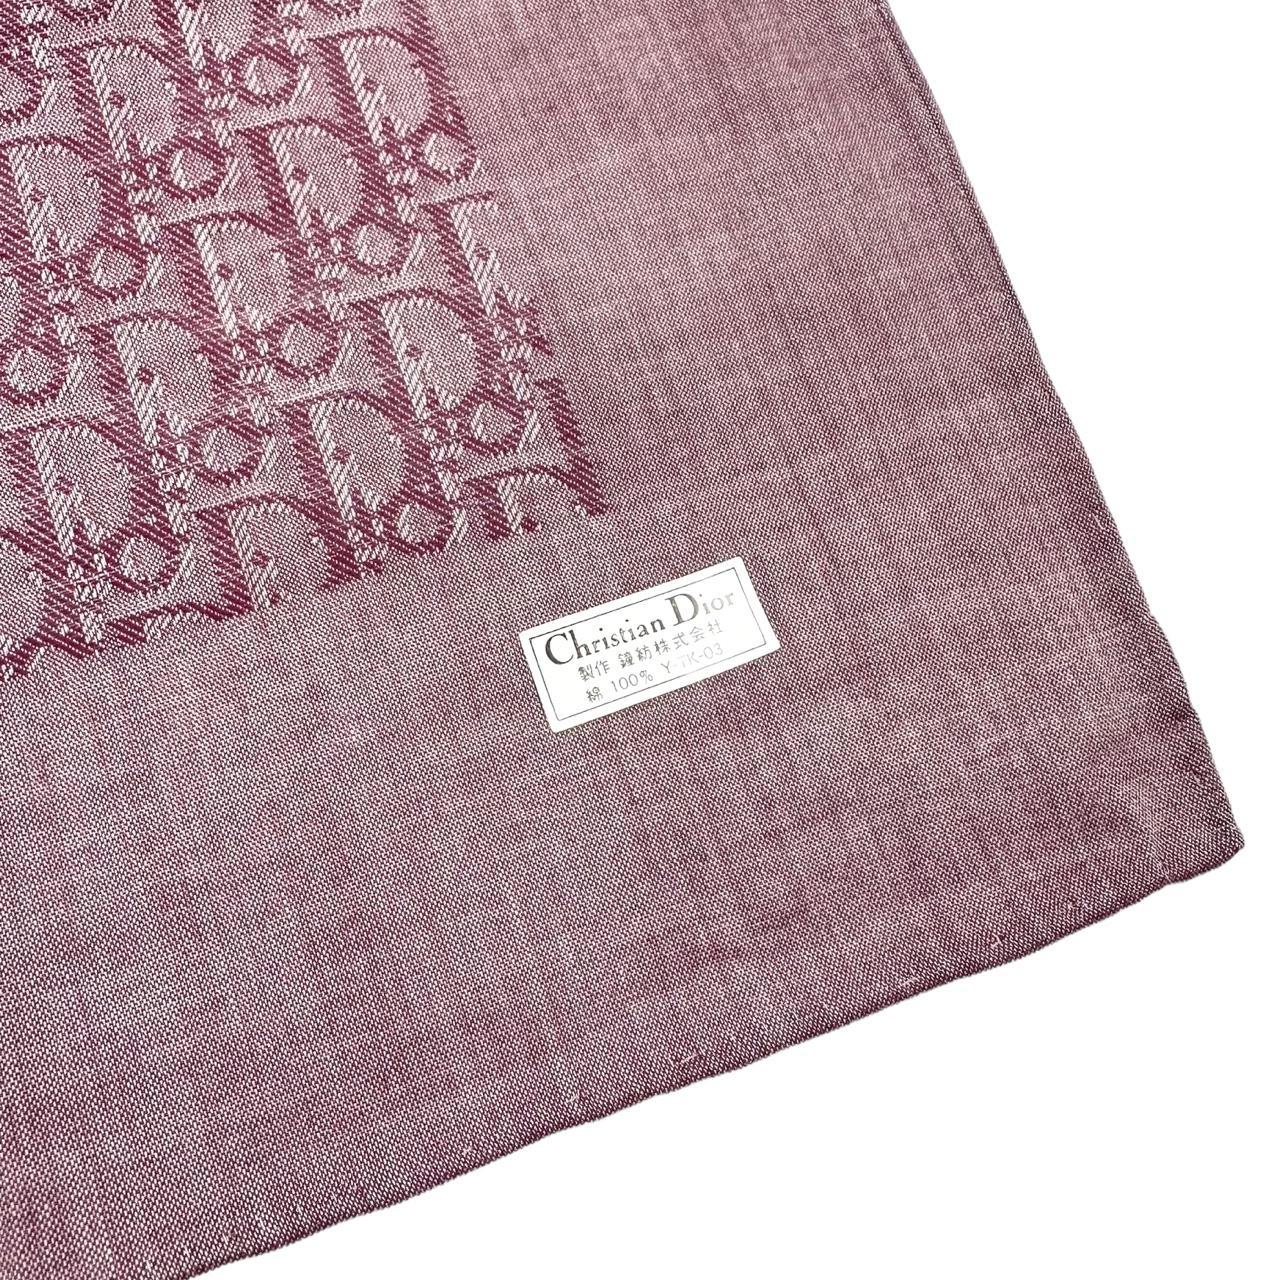 Vintage Dior Monogram Handkerchief / Bandana